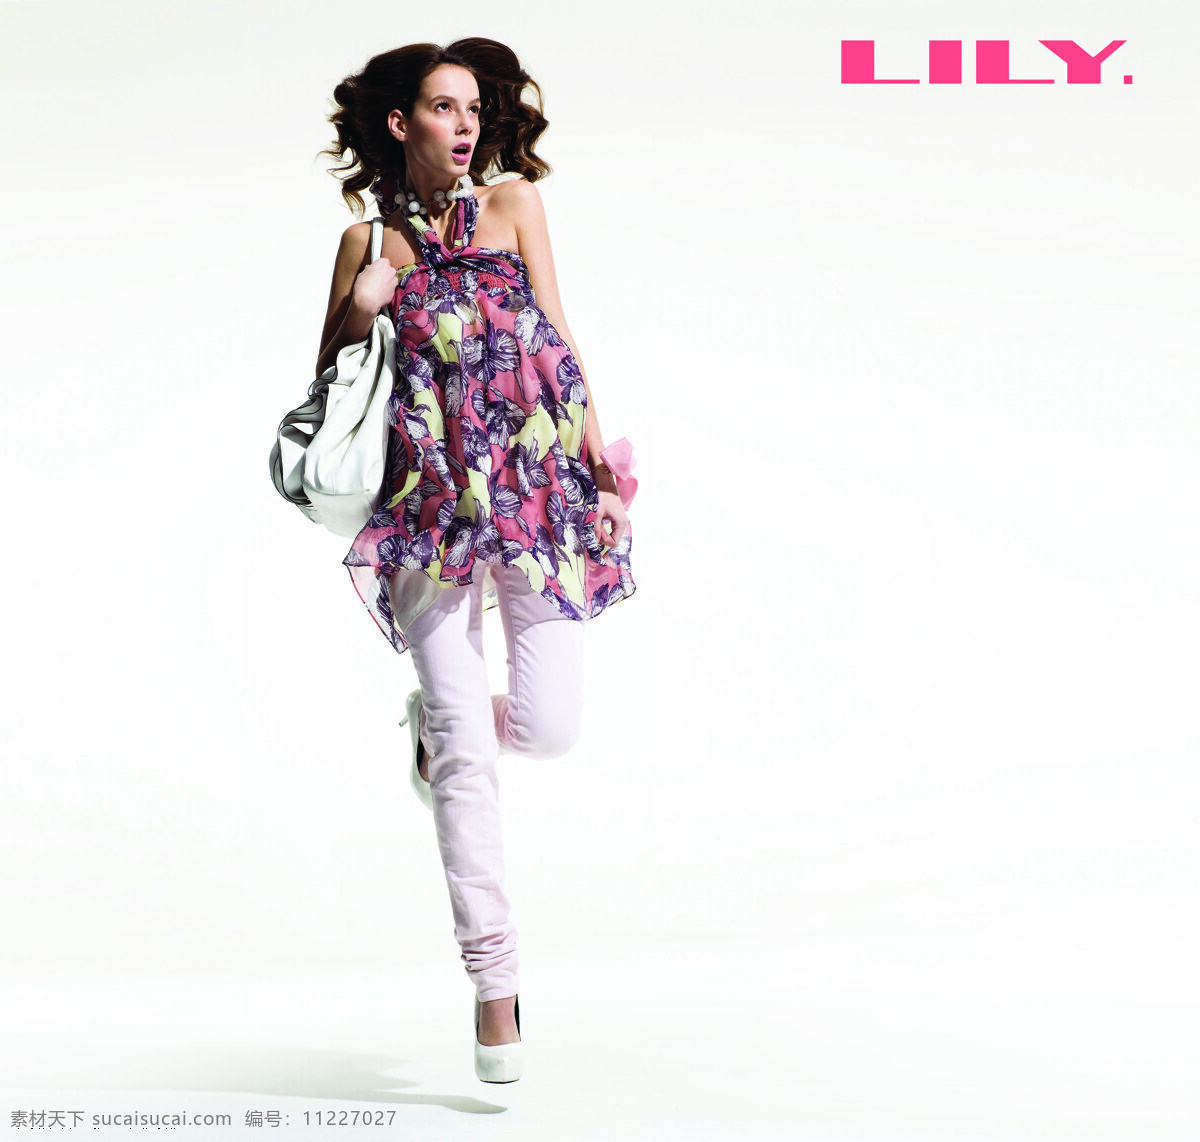 美女 女性女人 品牌服饰 人物 人物摄影 人物图库 衣服 lily lily服装 新款服装 psd源文件